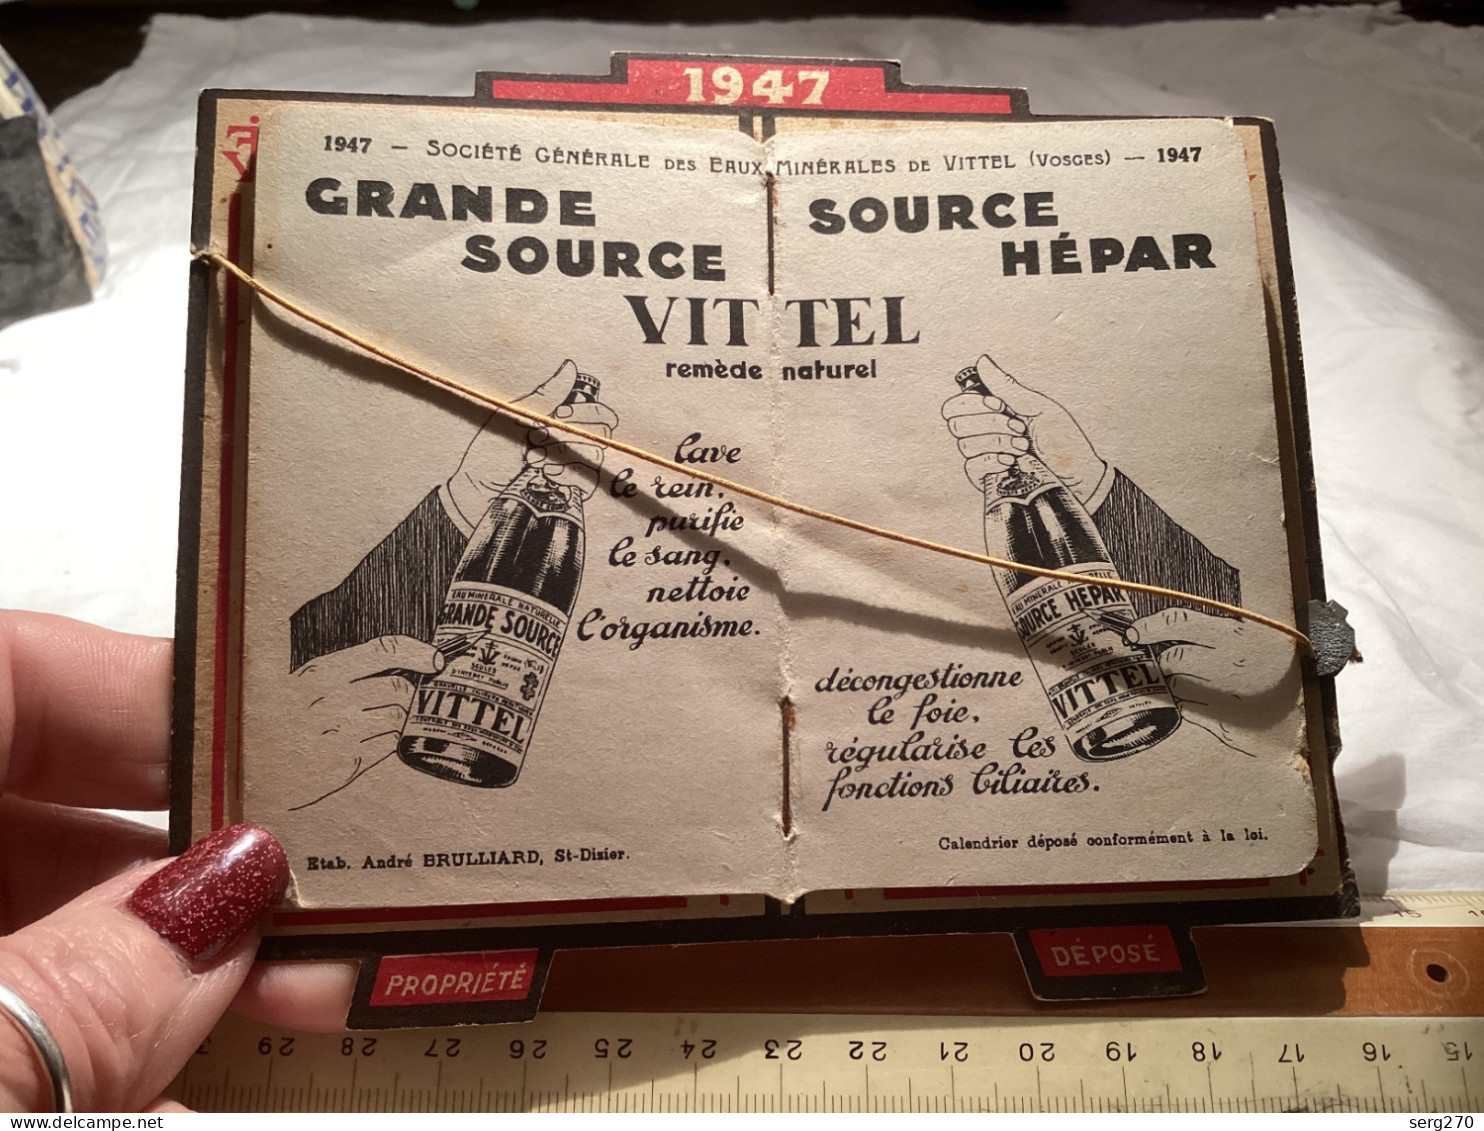 Publicité Vittel sur carton avec ferraille au milieu 1947, calendrier, publicité, Vittel Vittel calendrier